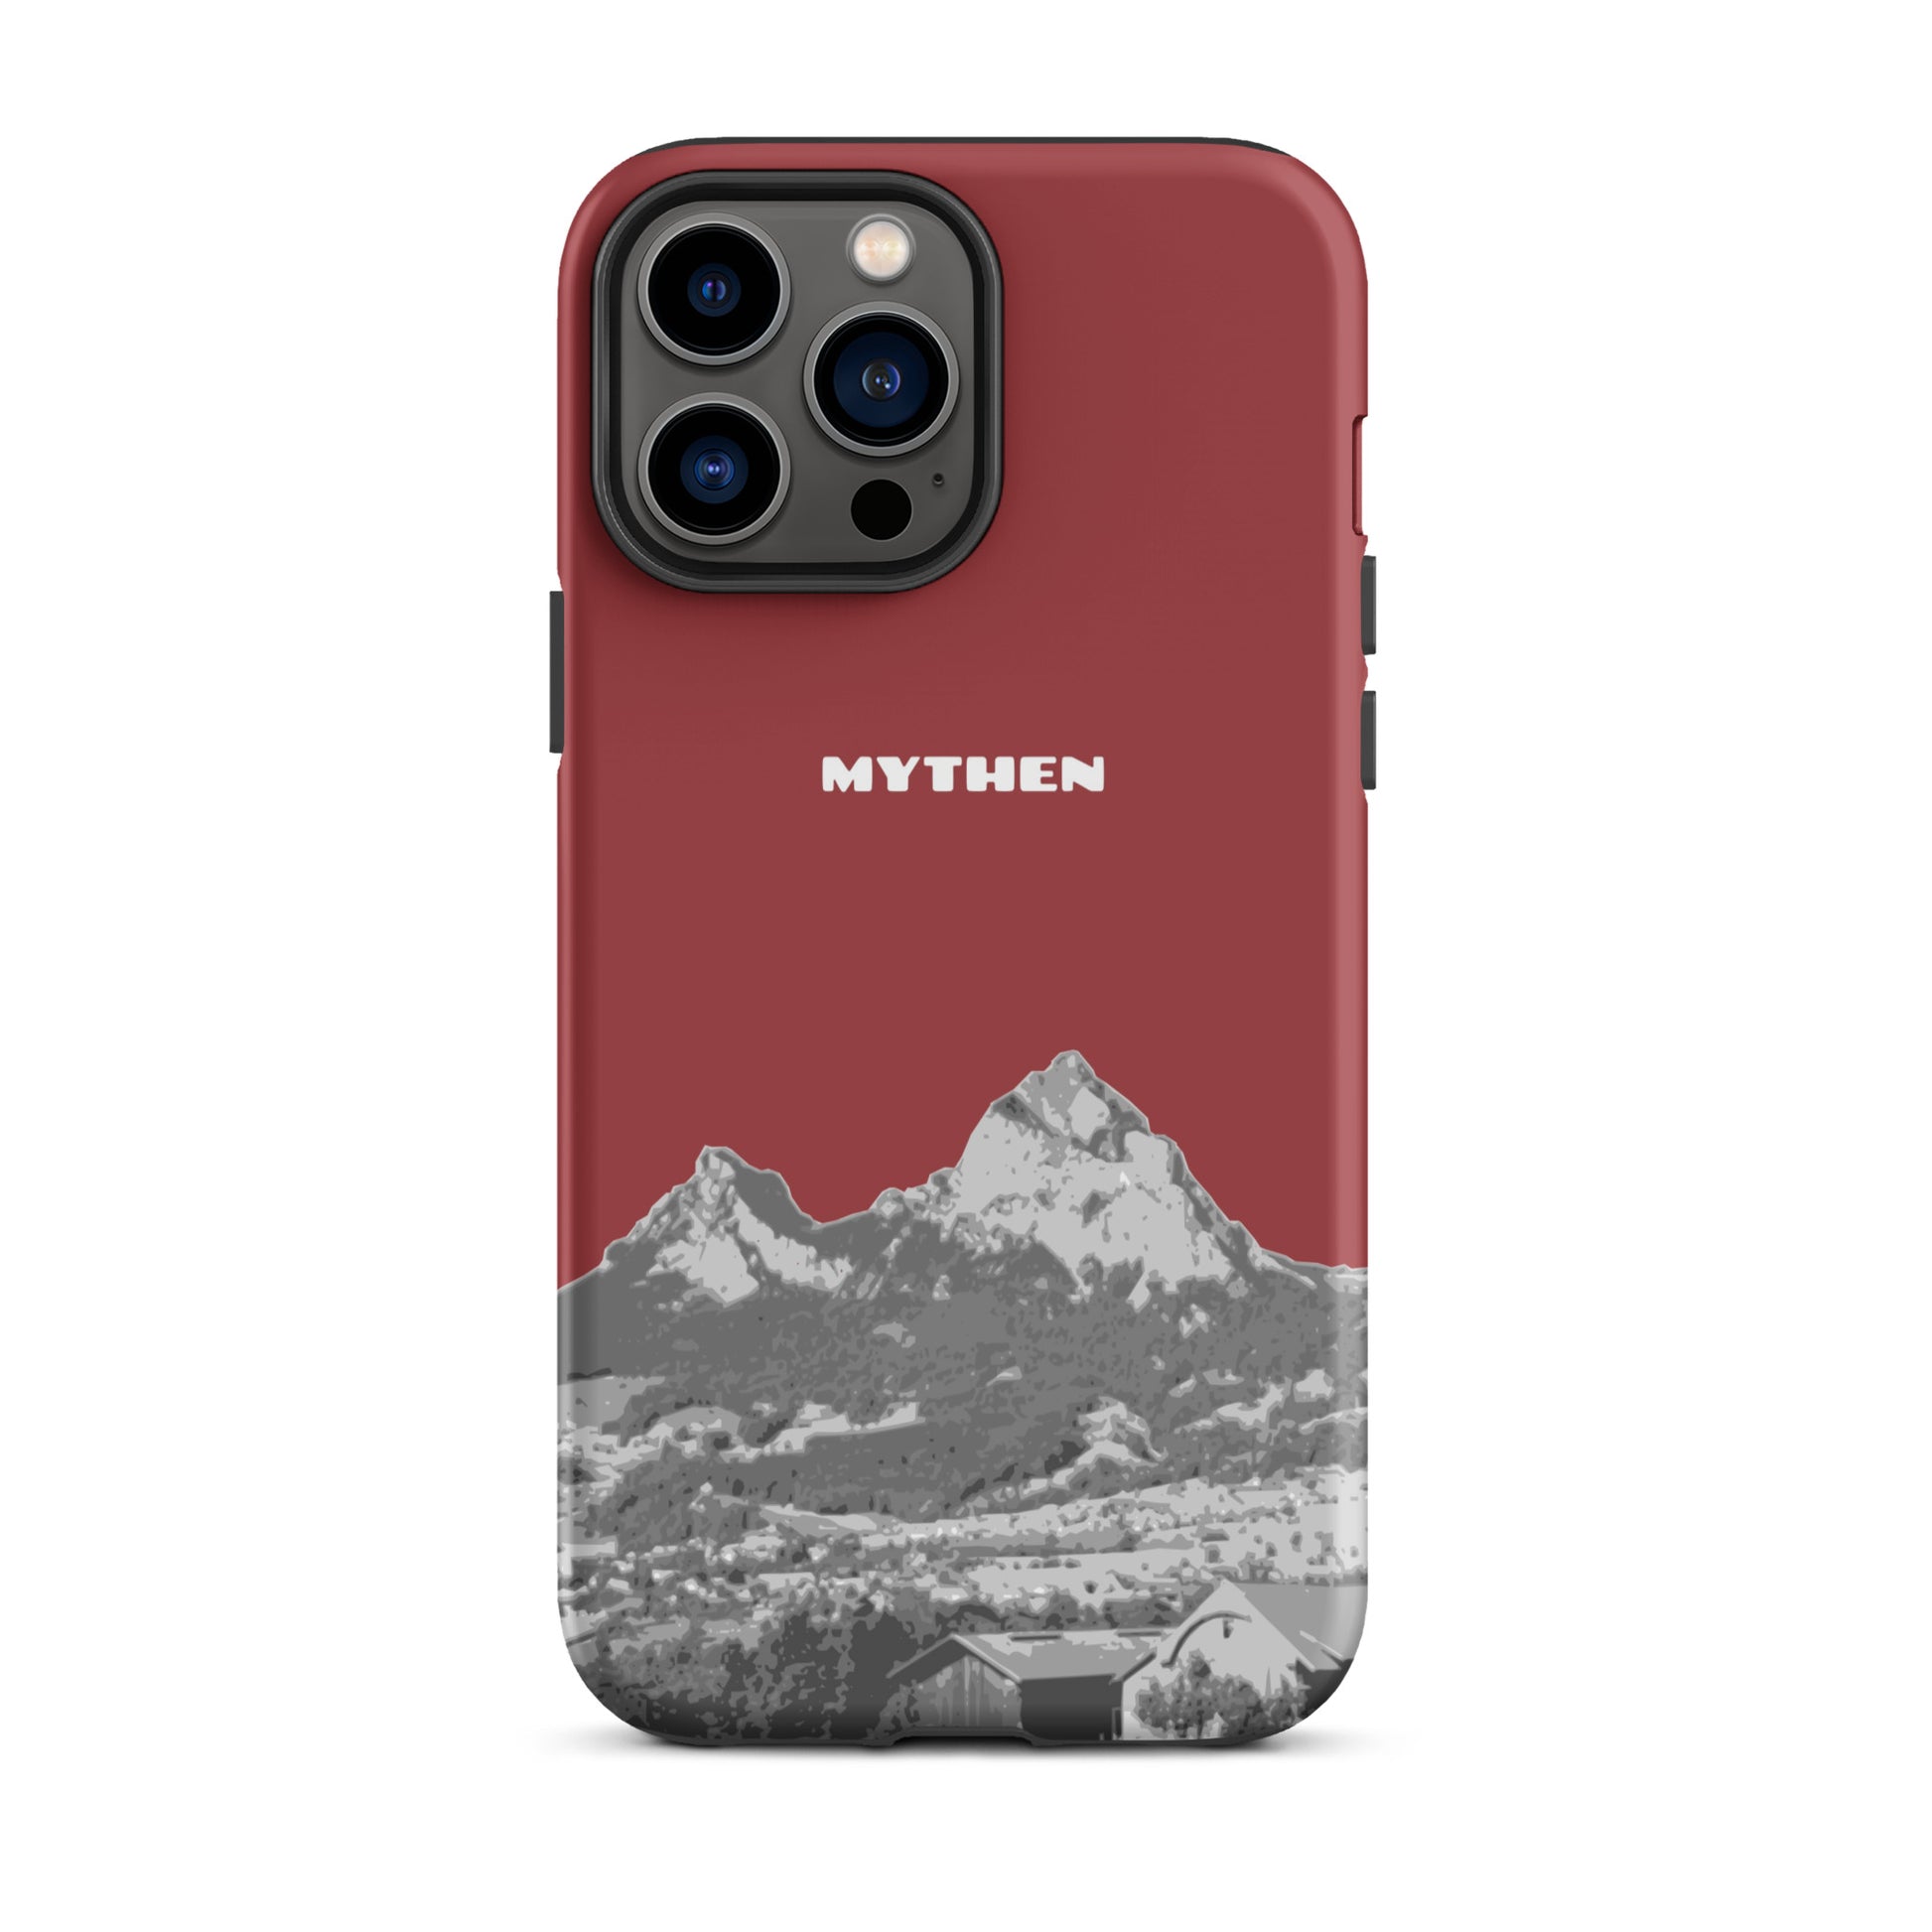 Hülle für das iPhone 13 Pro Max von Apple in der Farbe Rot, die den Grossen Mythen und den Kleinen Mythen bei Schwyz zeigt. 